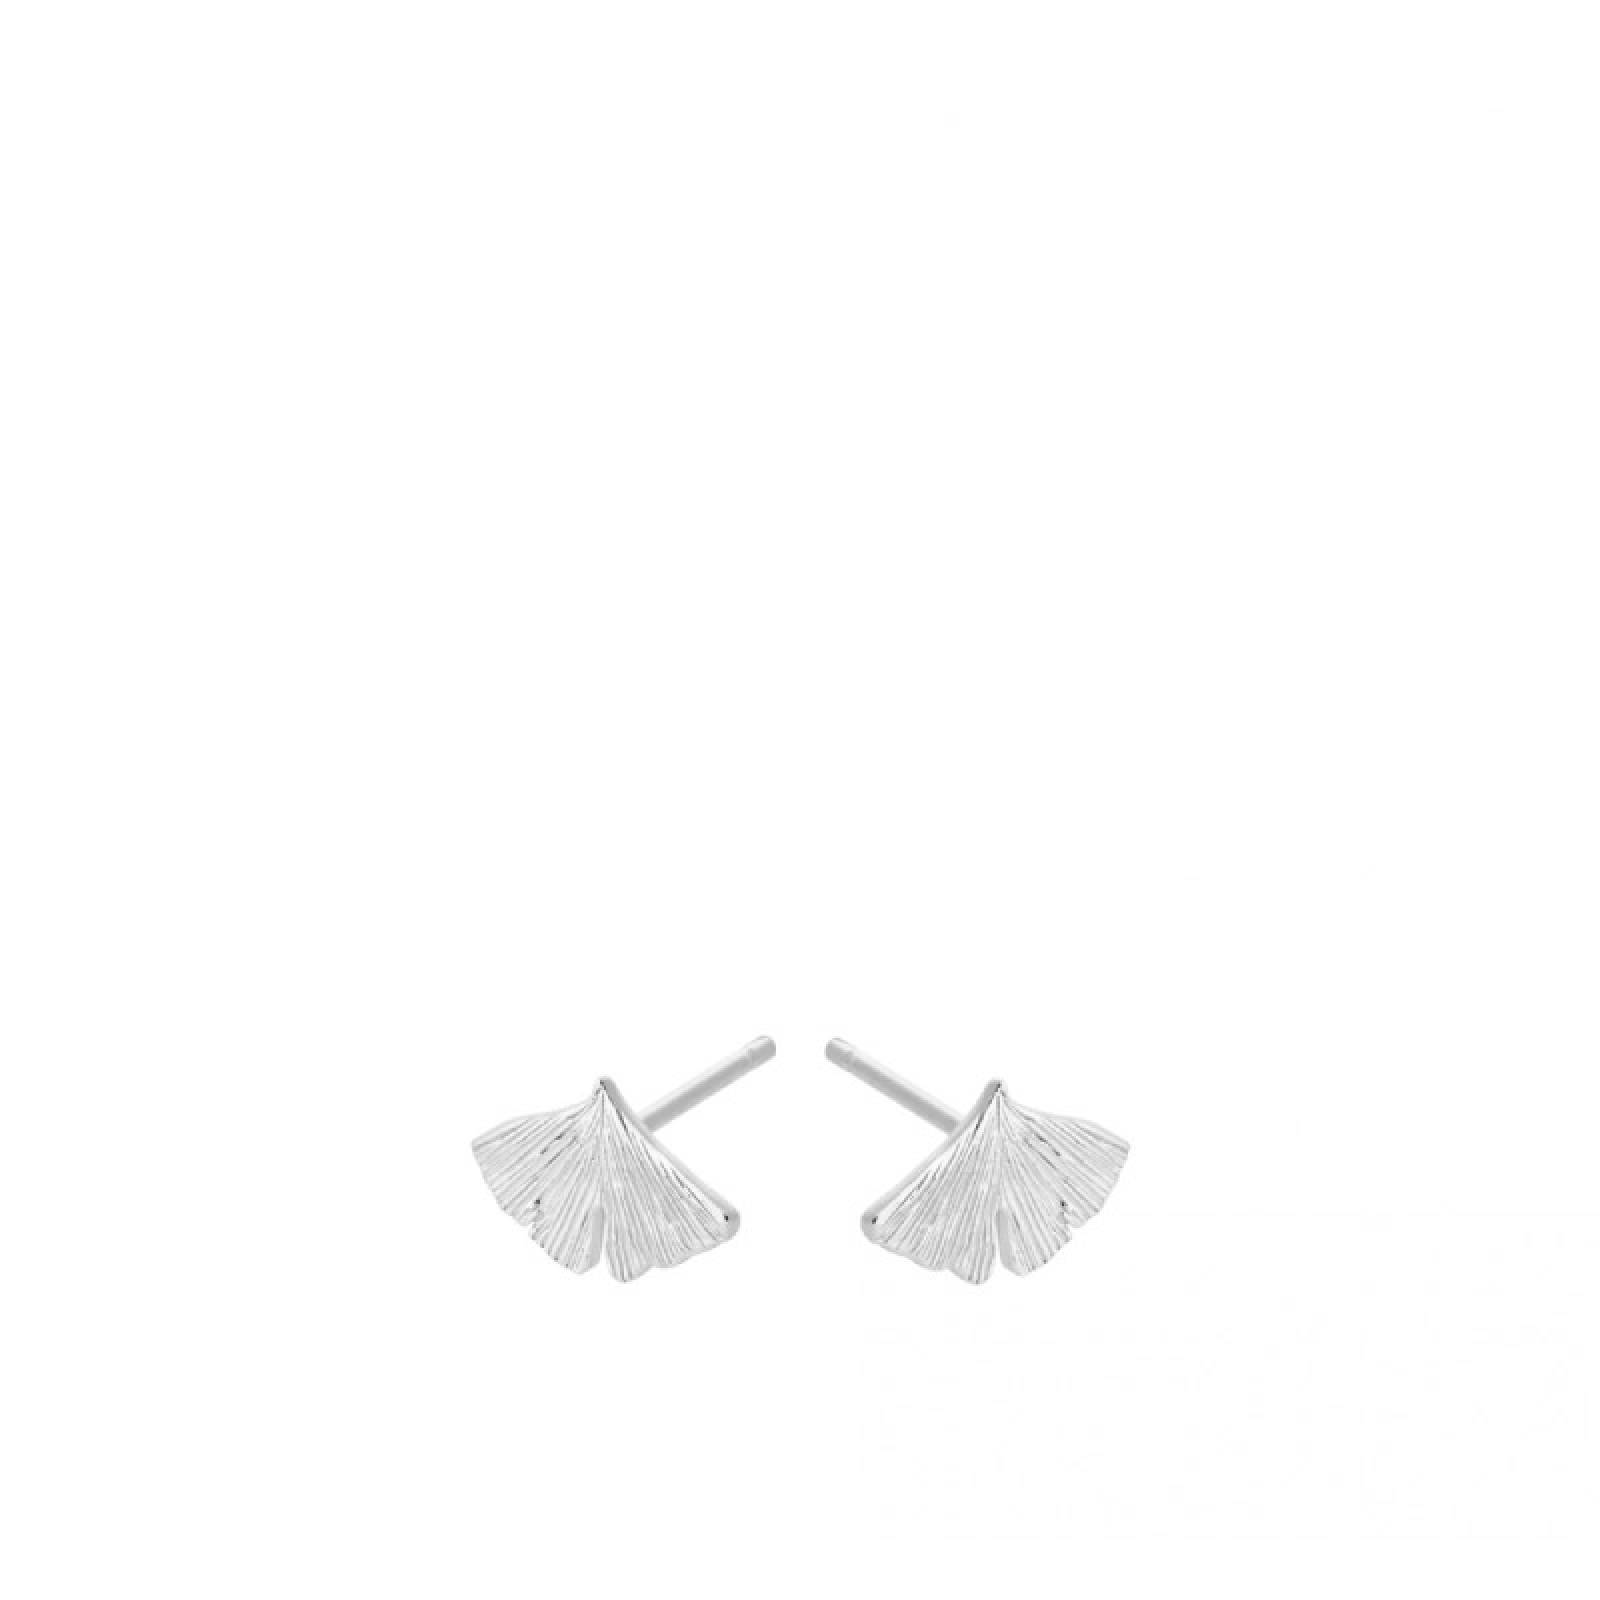 Biloba Stud Earrings In Silver By Pernille Corydon